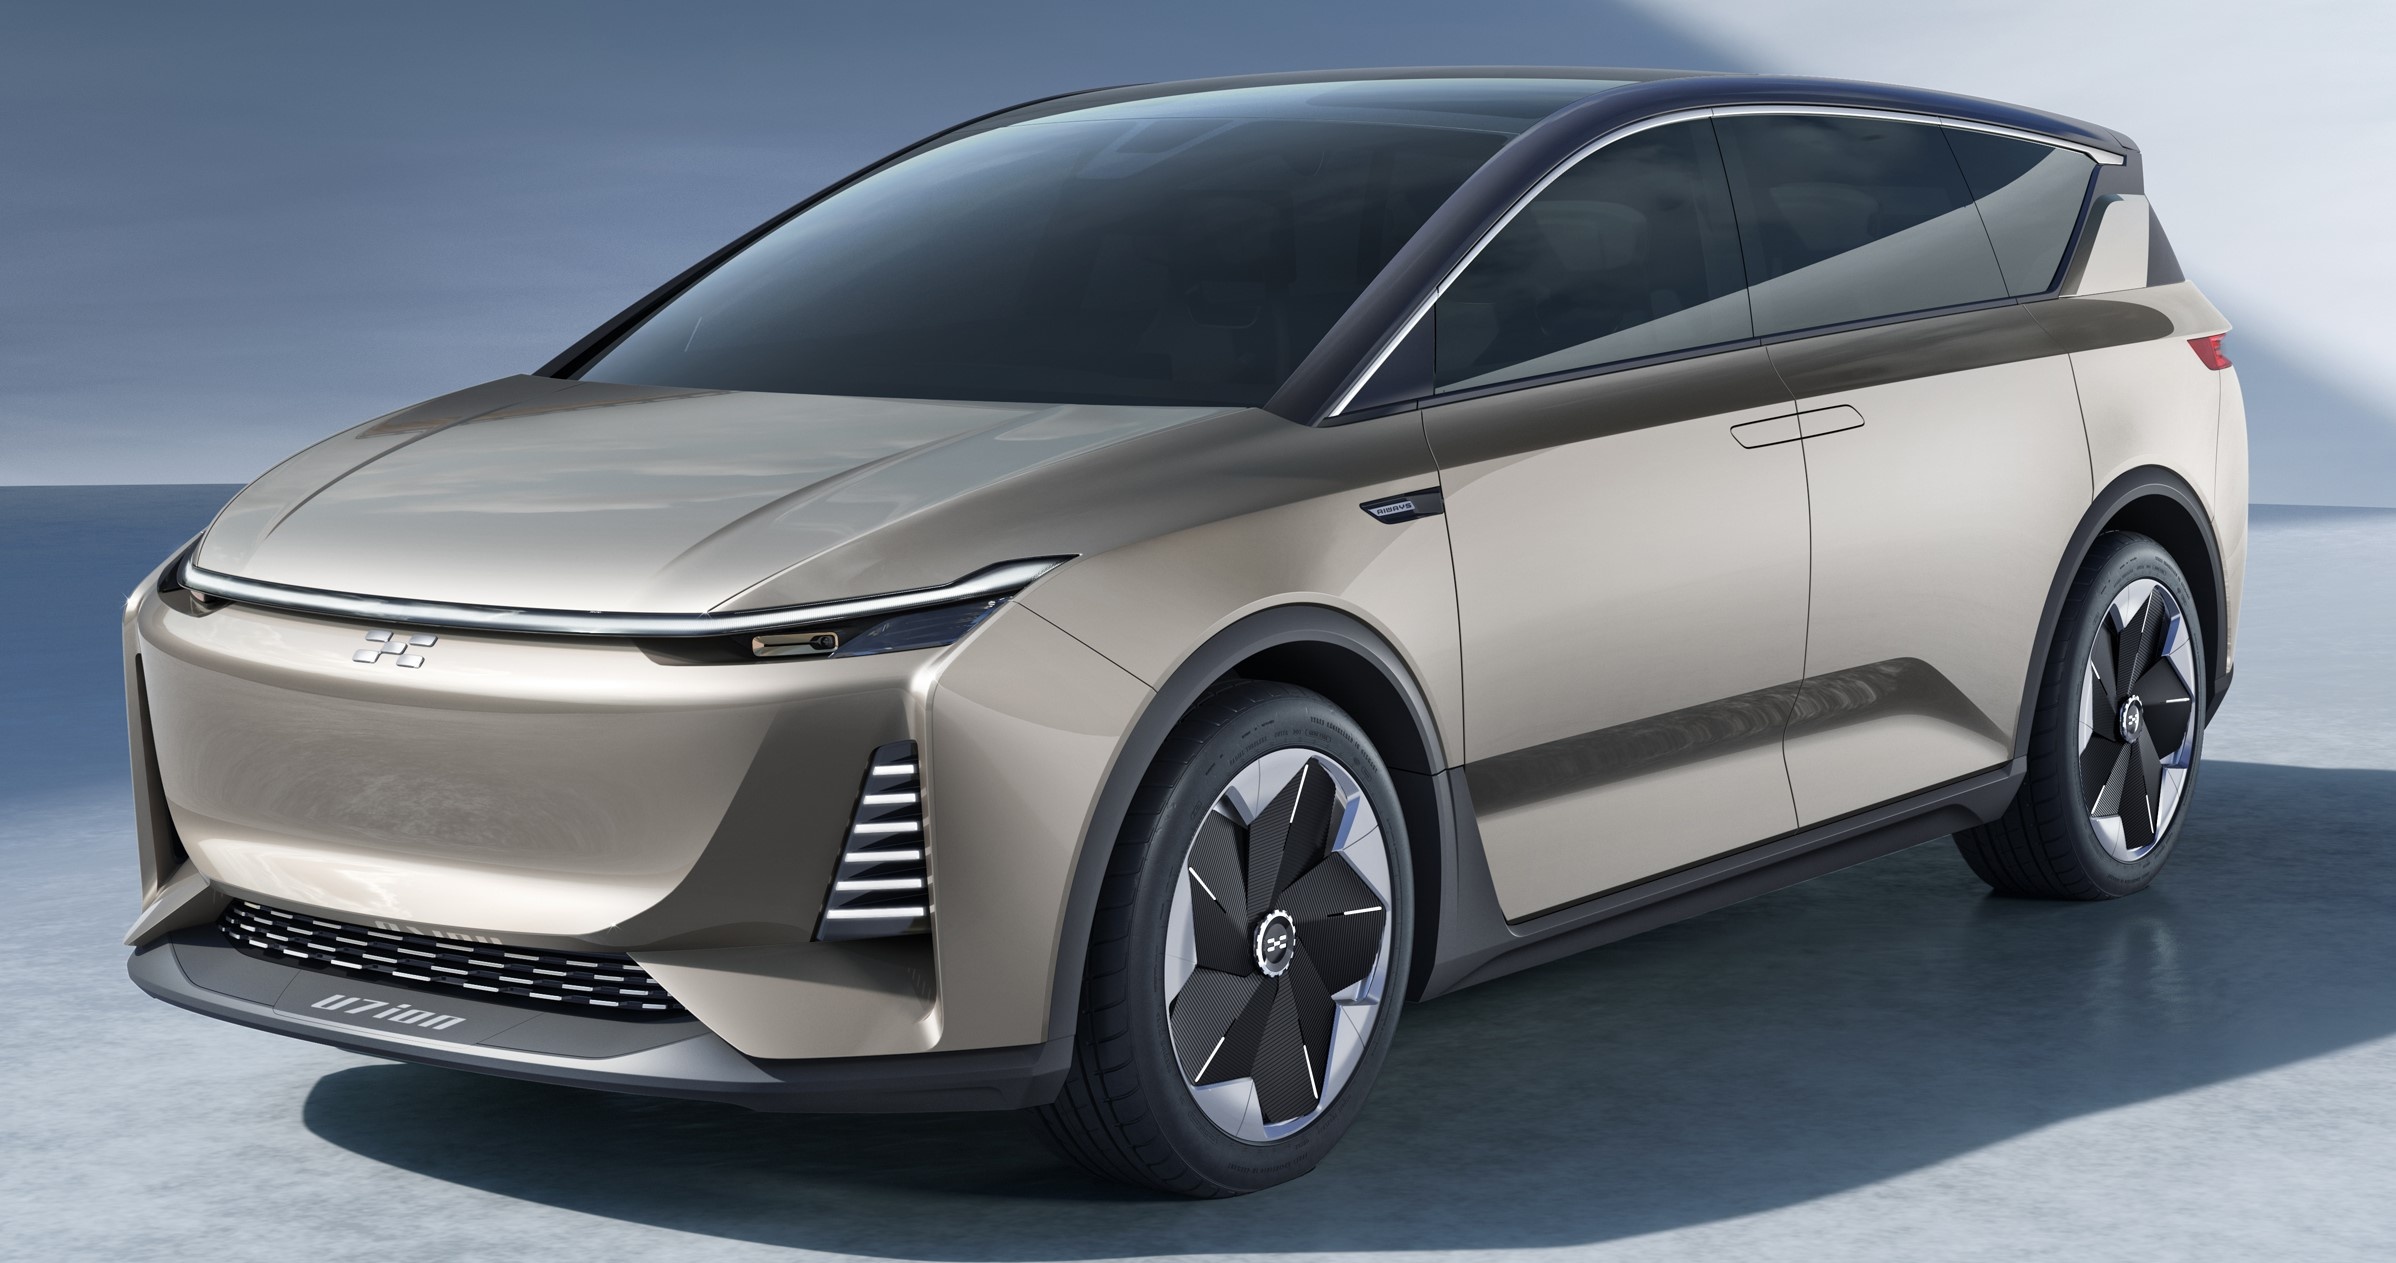 Aiways previews, Electric vehicle concept, Auto Shanghai, 2400x1270 HD Desktop